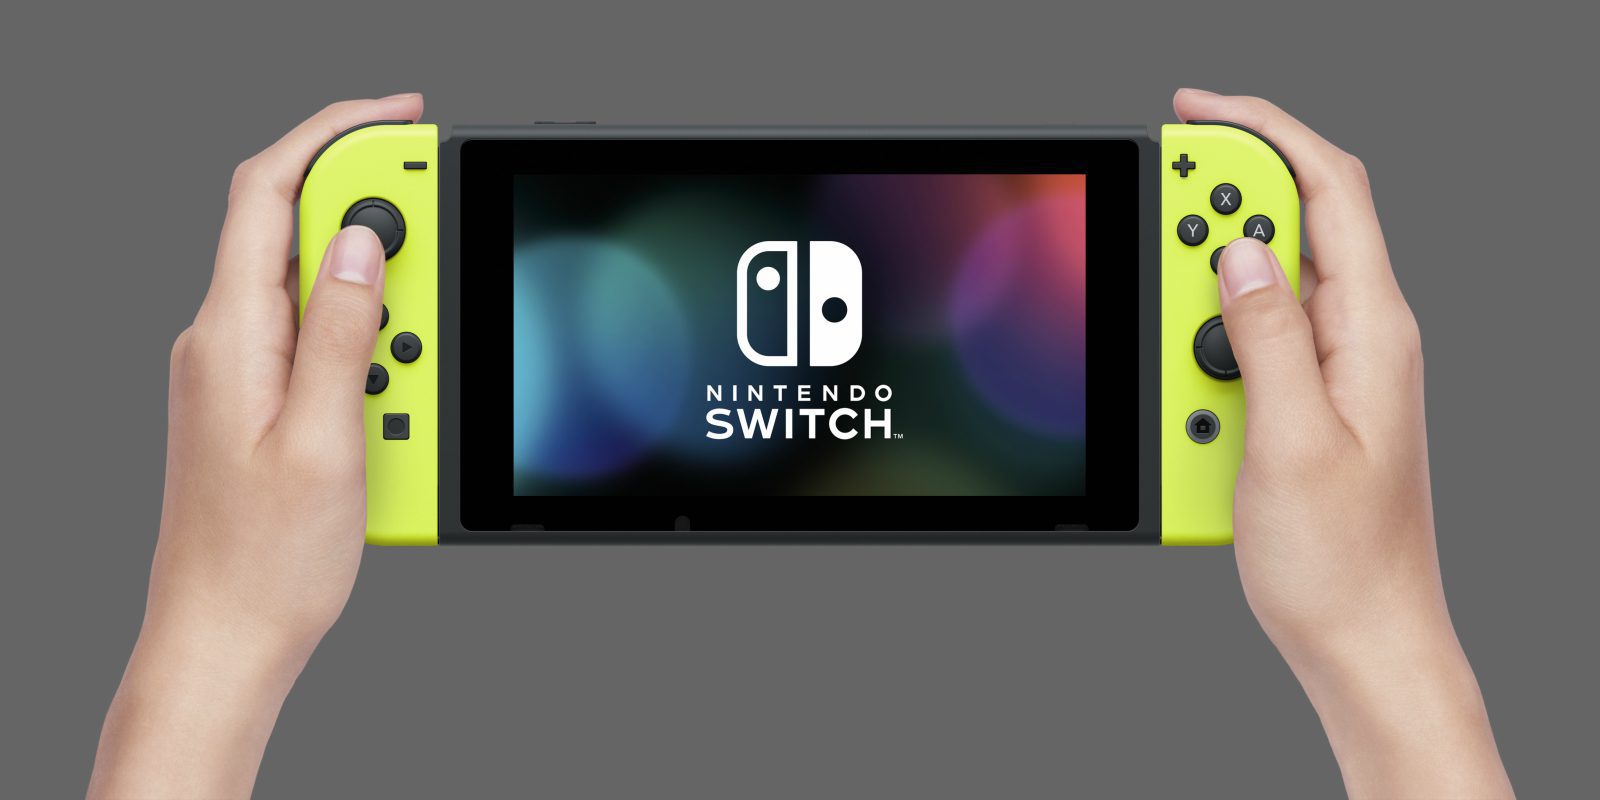 La actualización 4.0 de Nintendo Switch permite grabar vídeos y transferir partidas guardadas